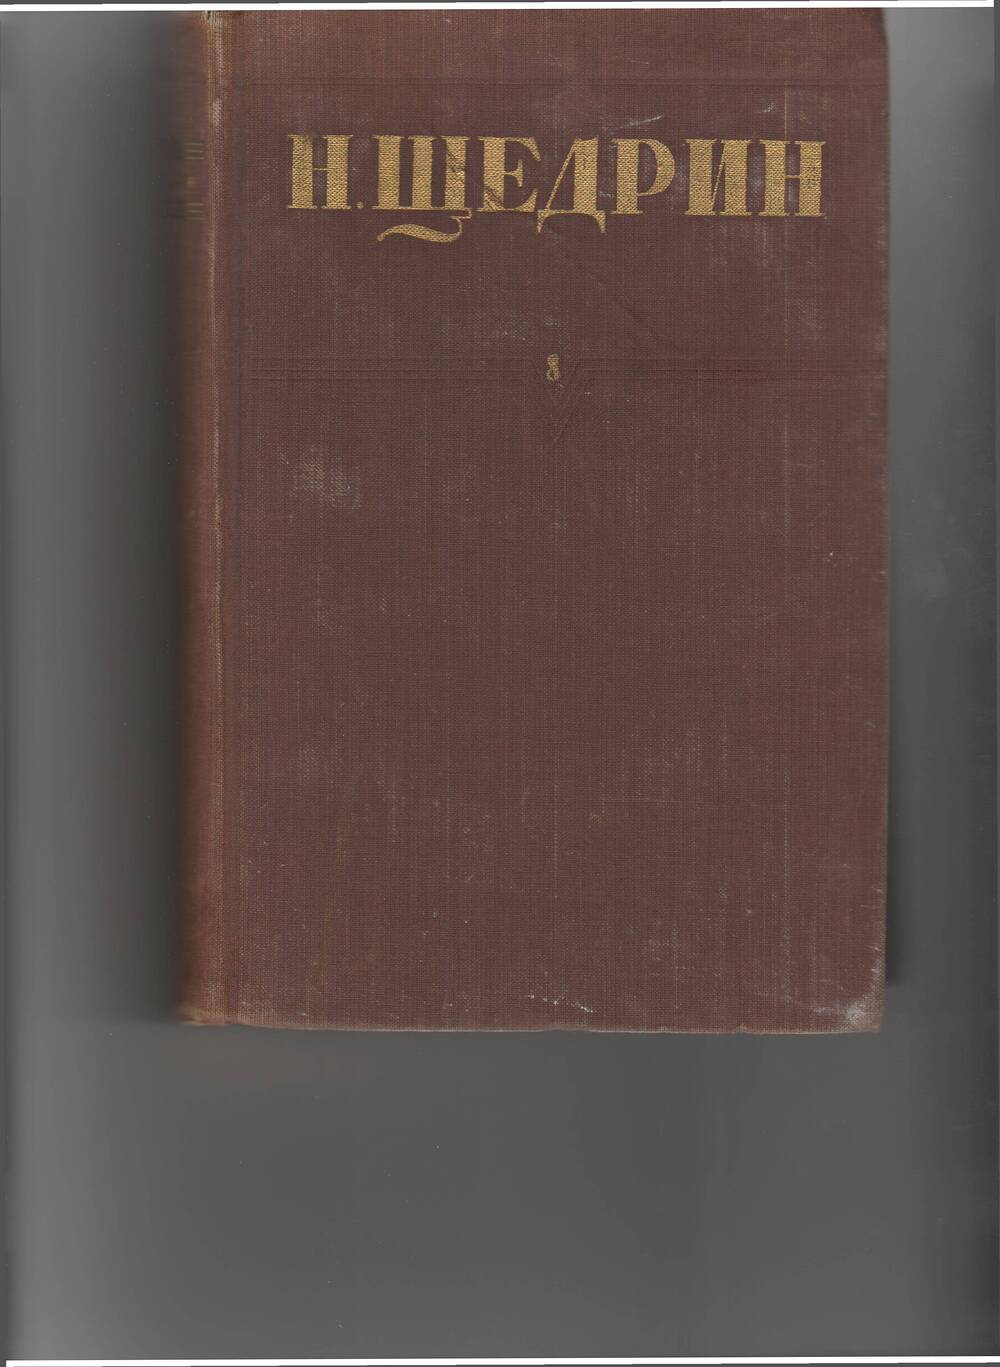 книга Щедрин Н. (М. Салтыков) Собр. соч. т.8. - М: Правда,1951.